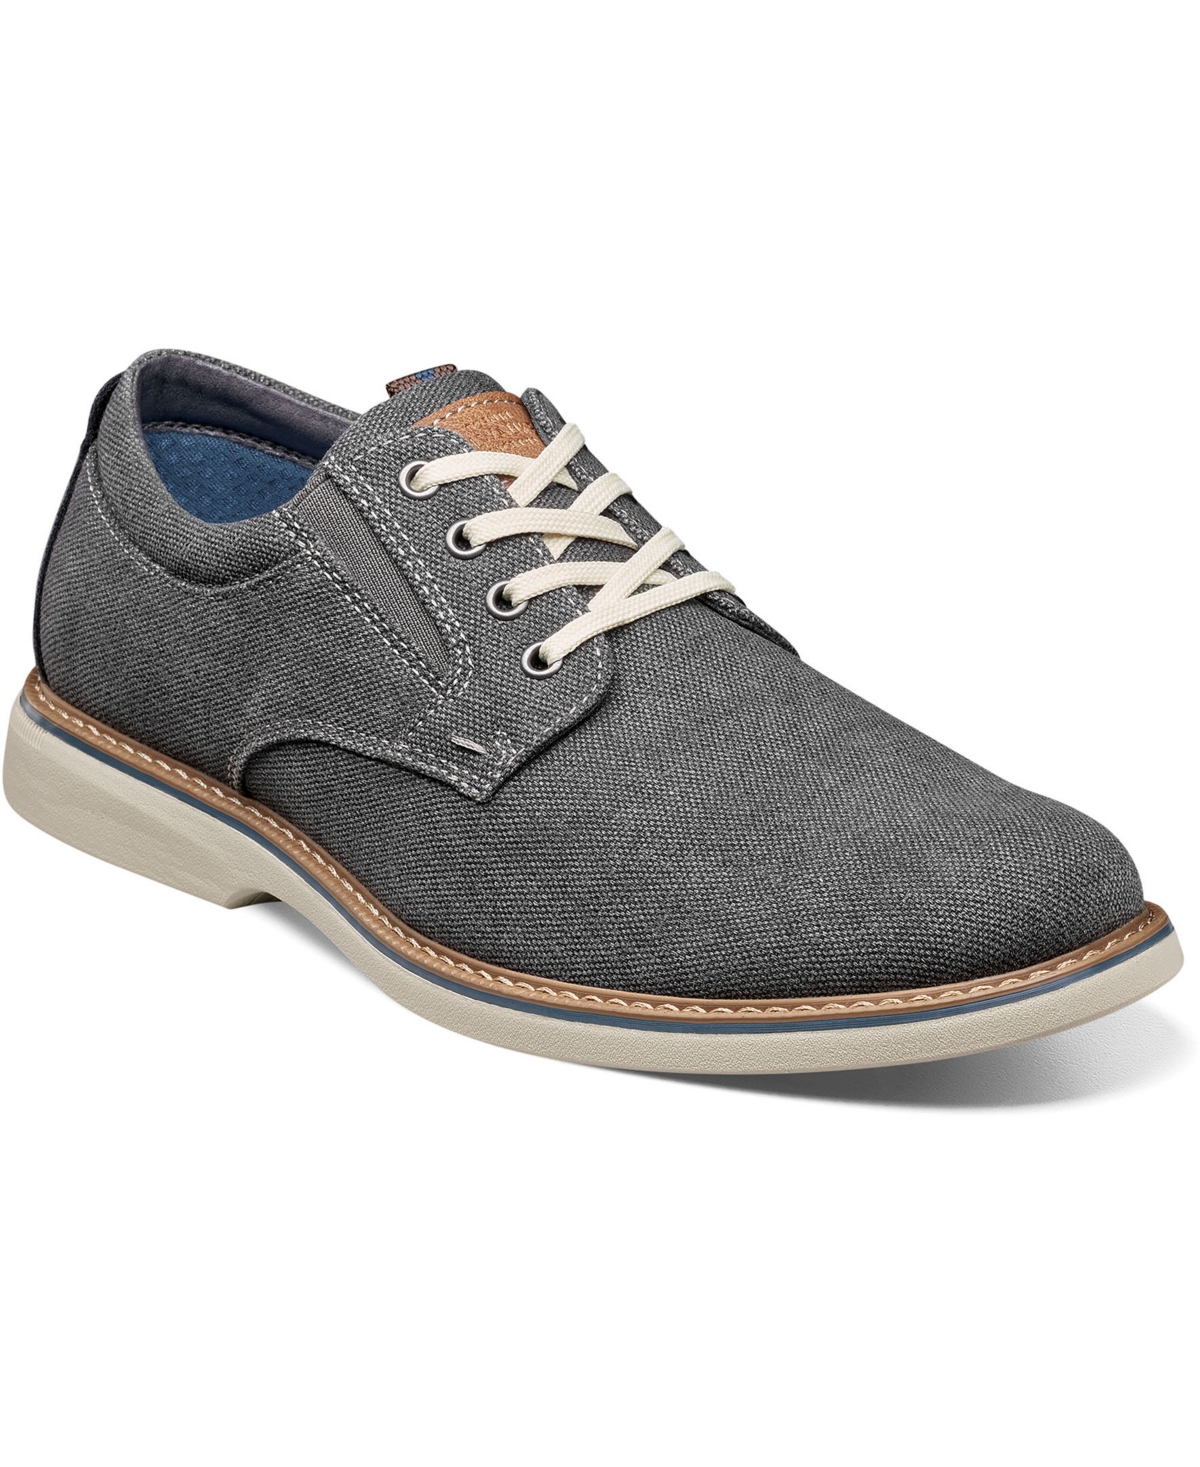 Men's Otto Canvas Plain Toe Oxford Shoes - Blue Denim